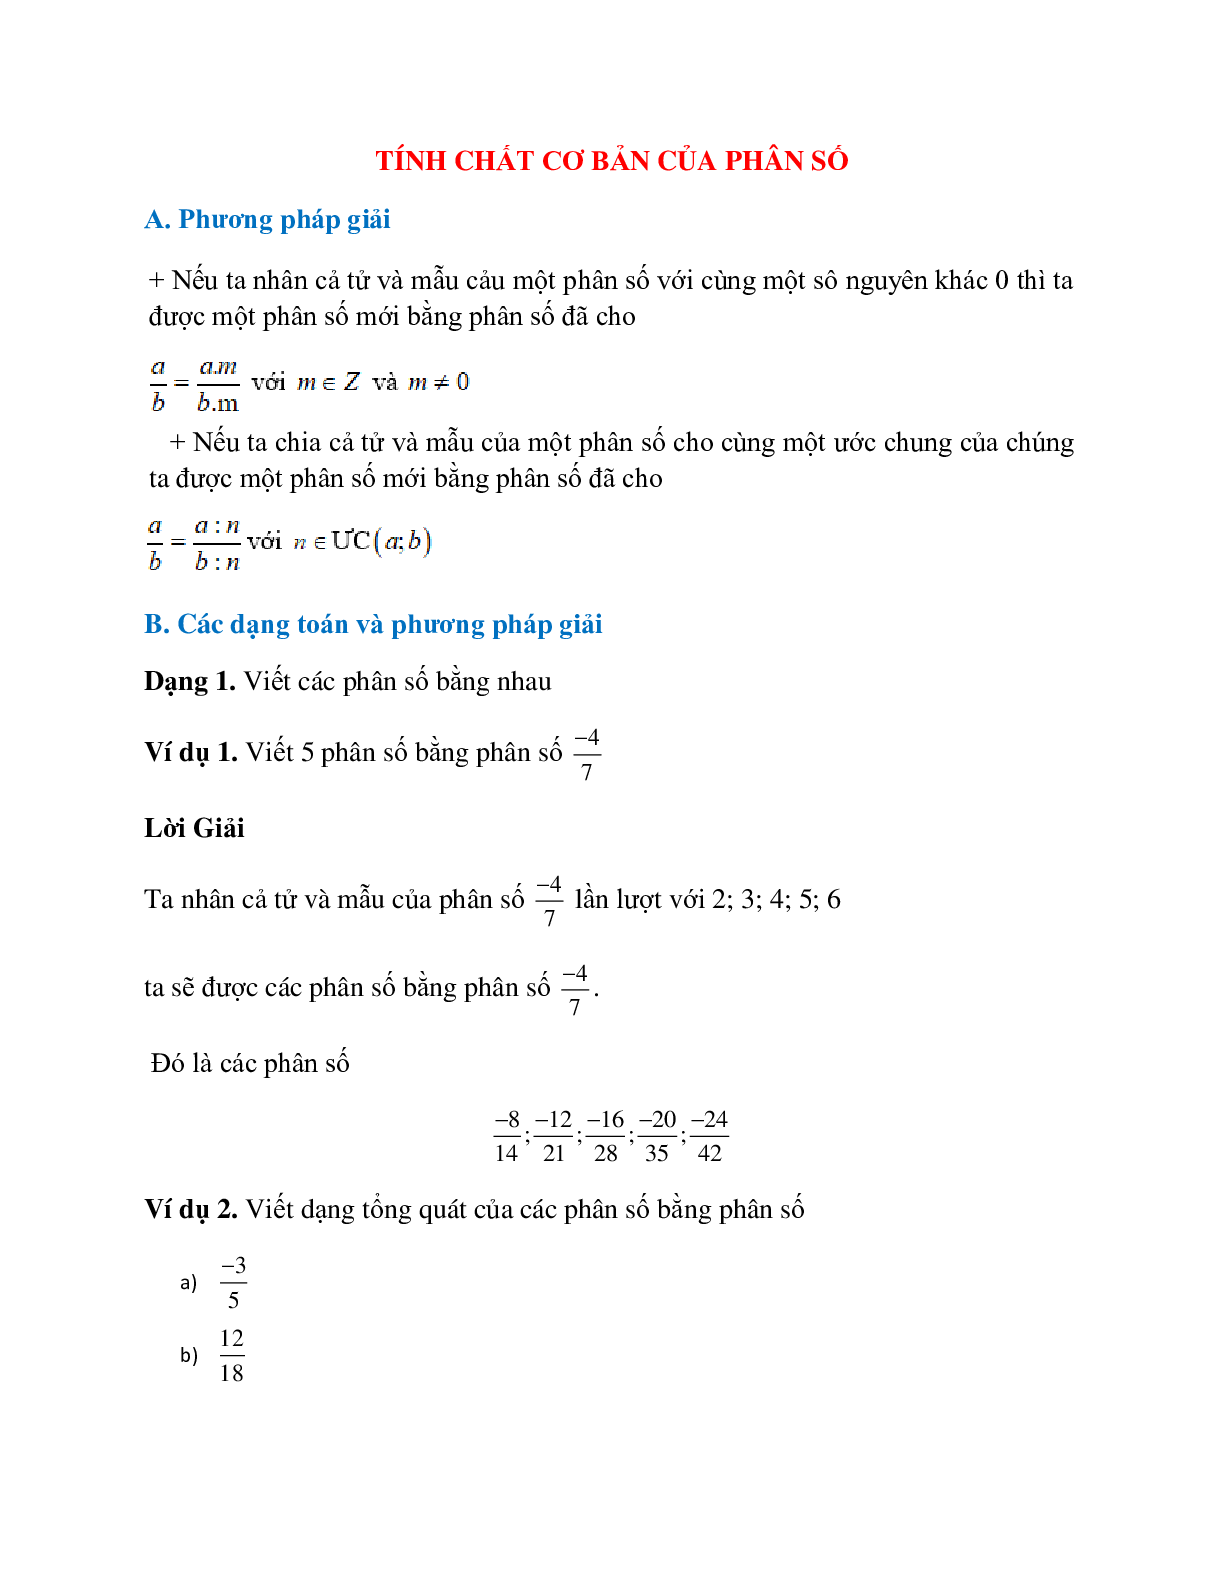 Hệ thống bài tập về tính chất cơ bản của phân số có lời giải (trang 1)